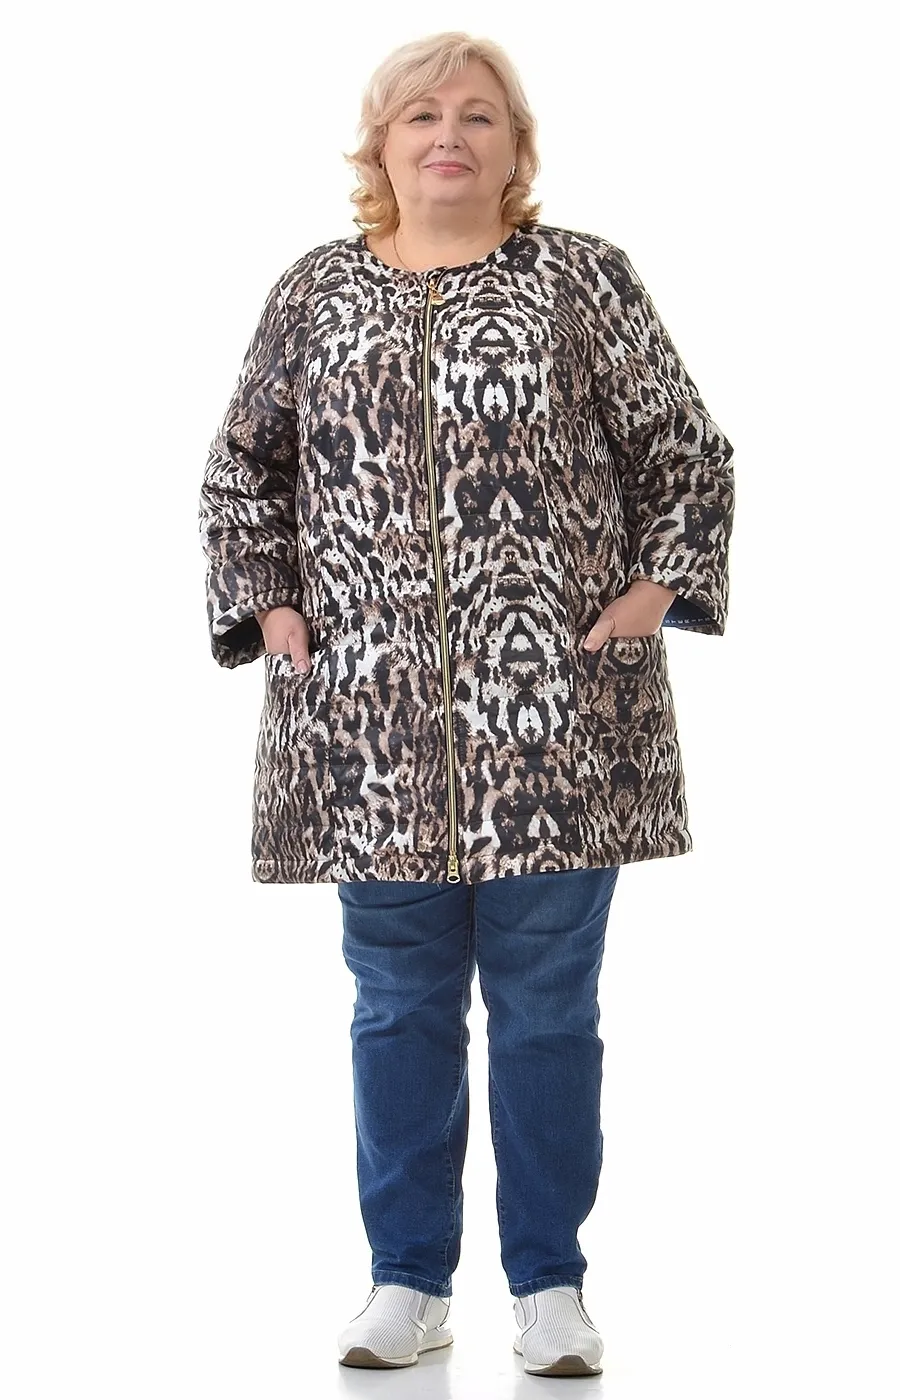 Куртка с леопардовым рисунком большого размера